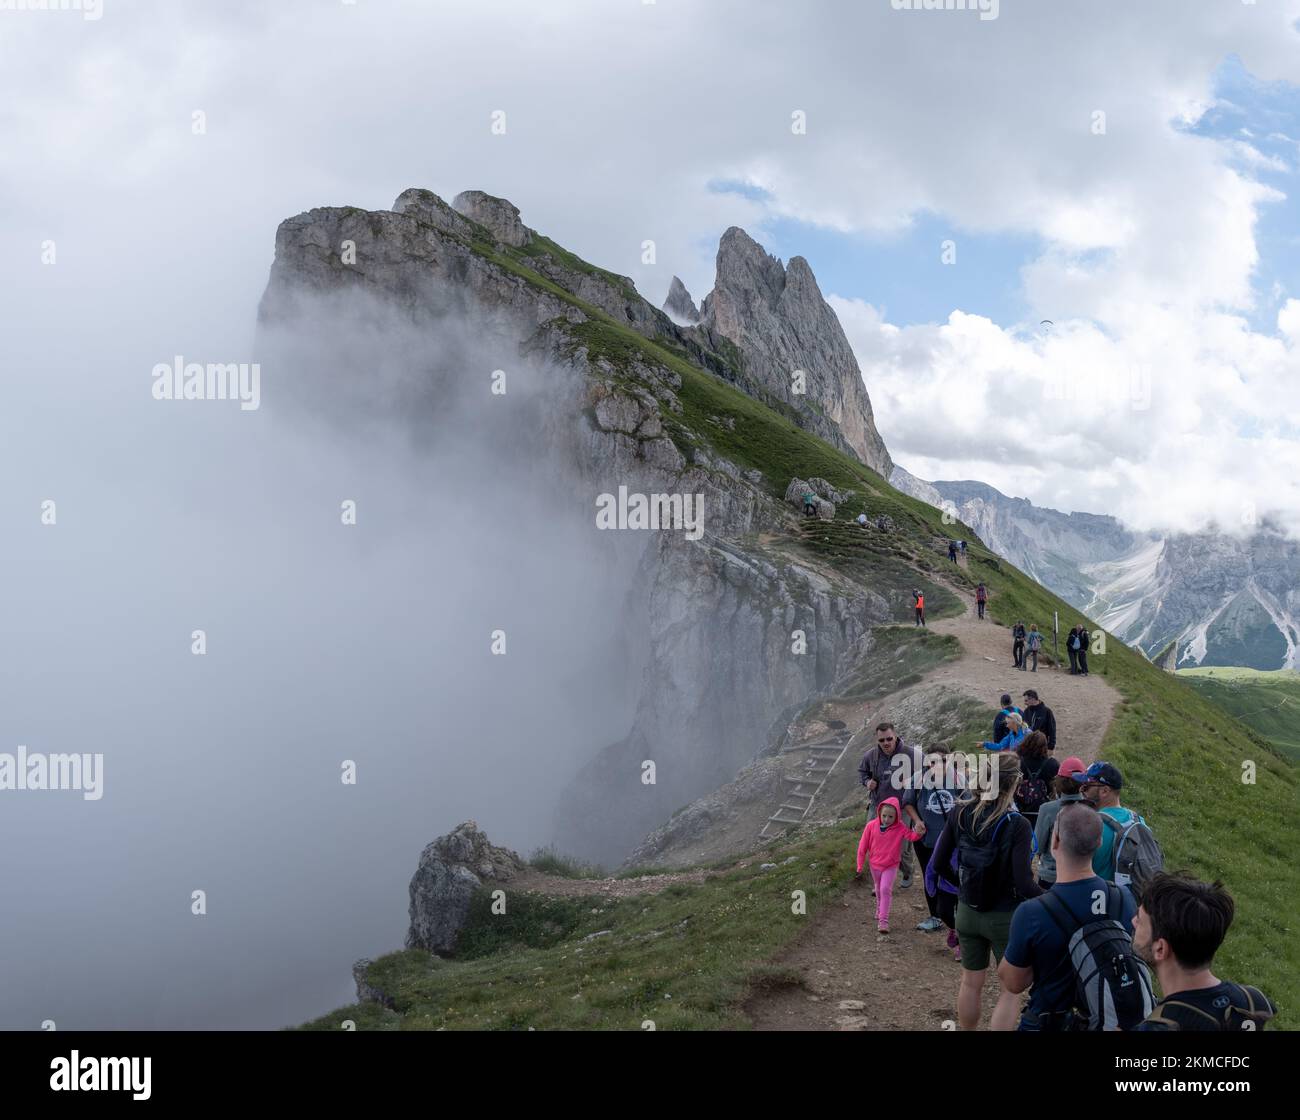 Viele verschiedene Touristen besuchen die berühmte Felsformation des Seceda-Gebirges in den italienischen Dolomiten. Stockfoto